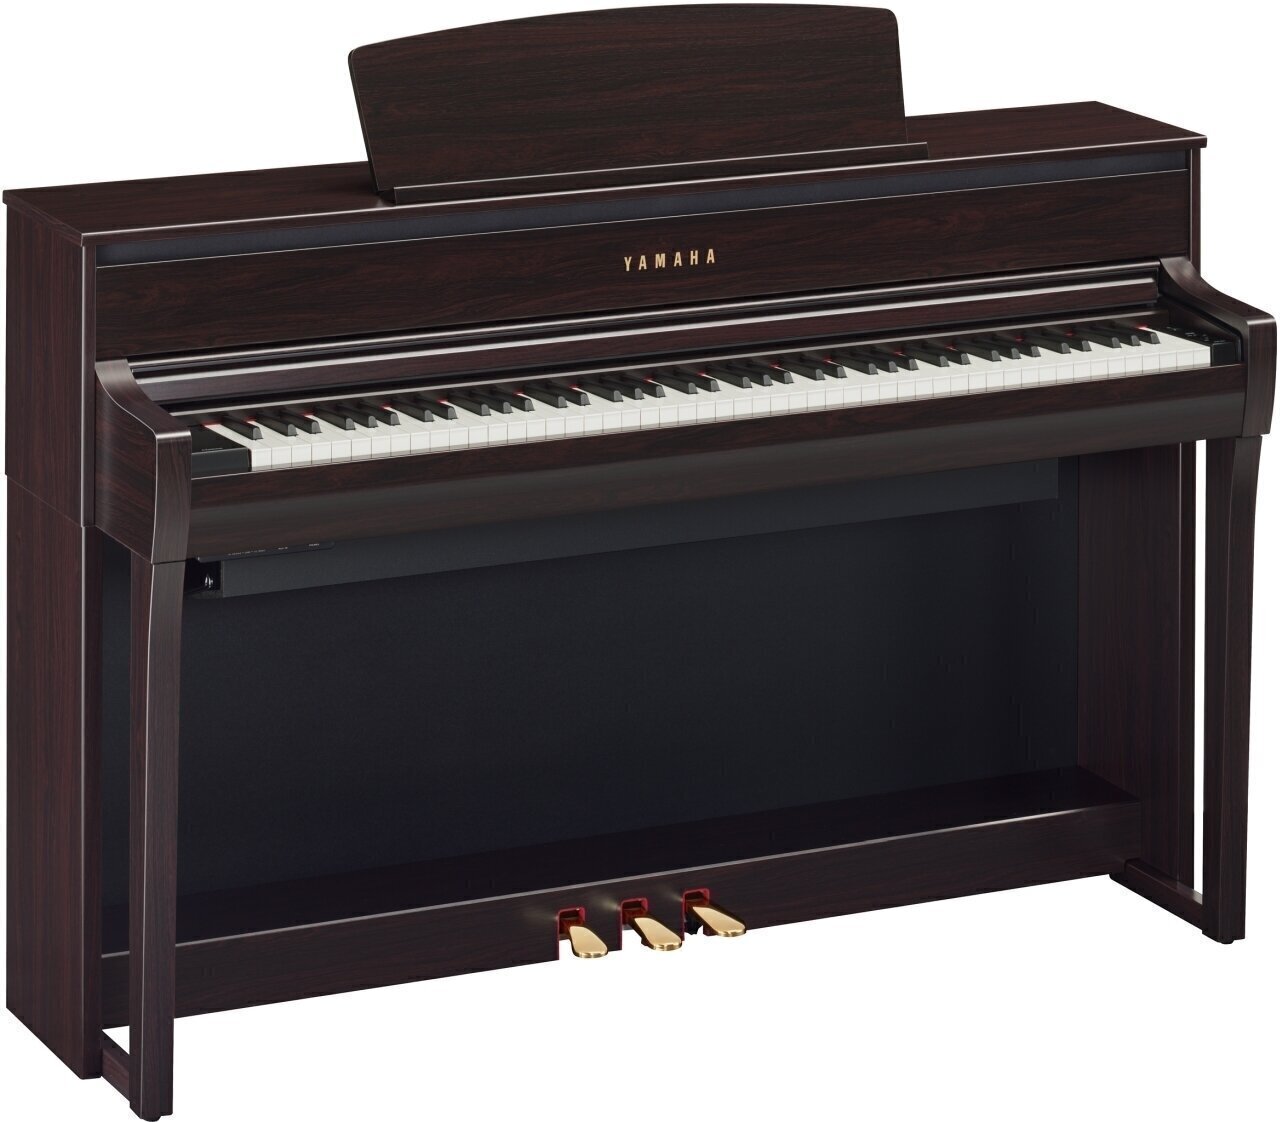 Digital Piano Yamaha CLP 775 Rosewood Digital Piano